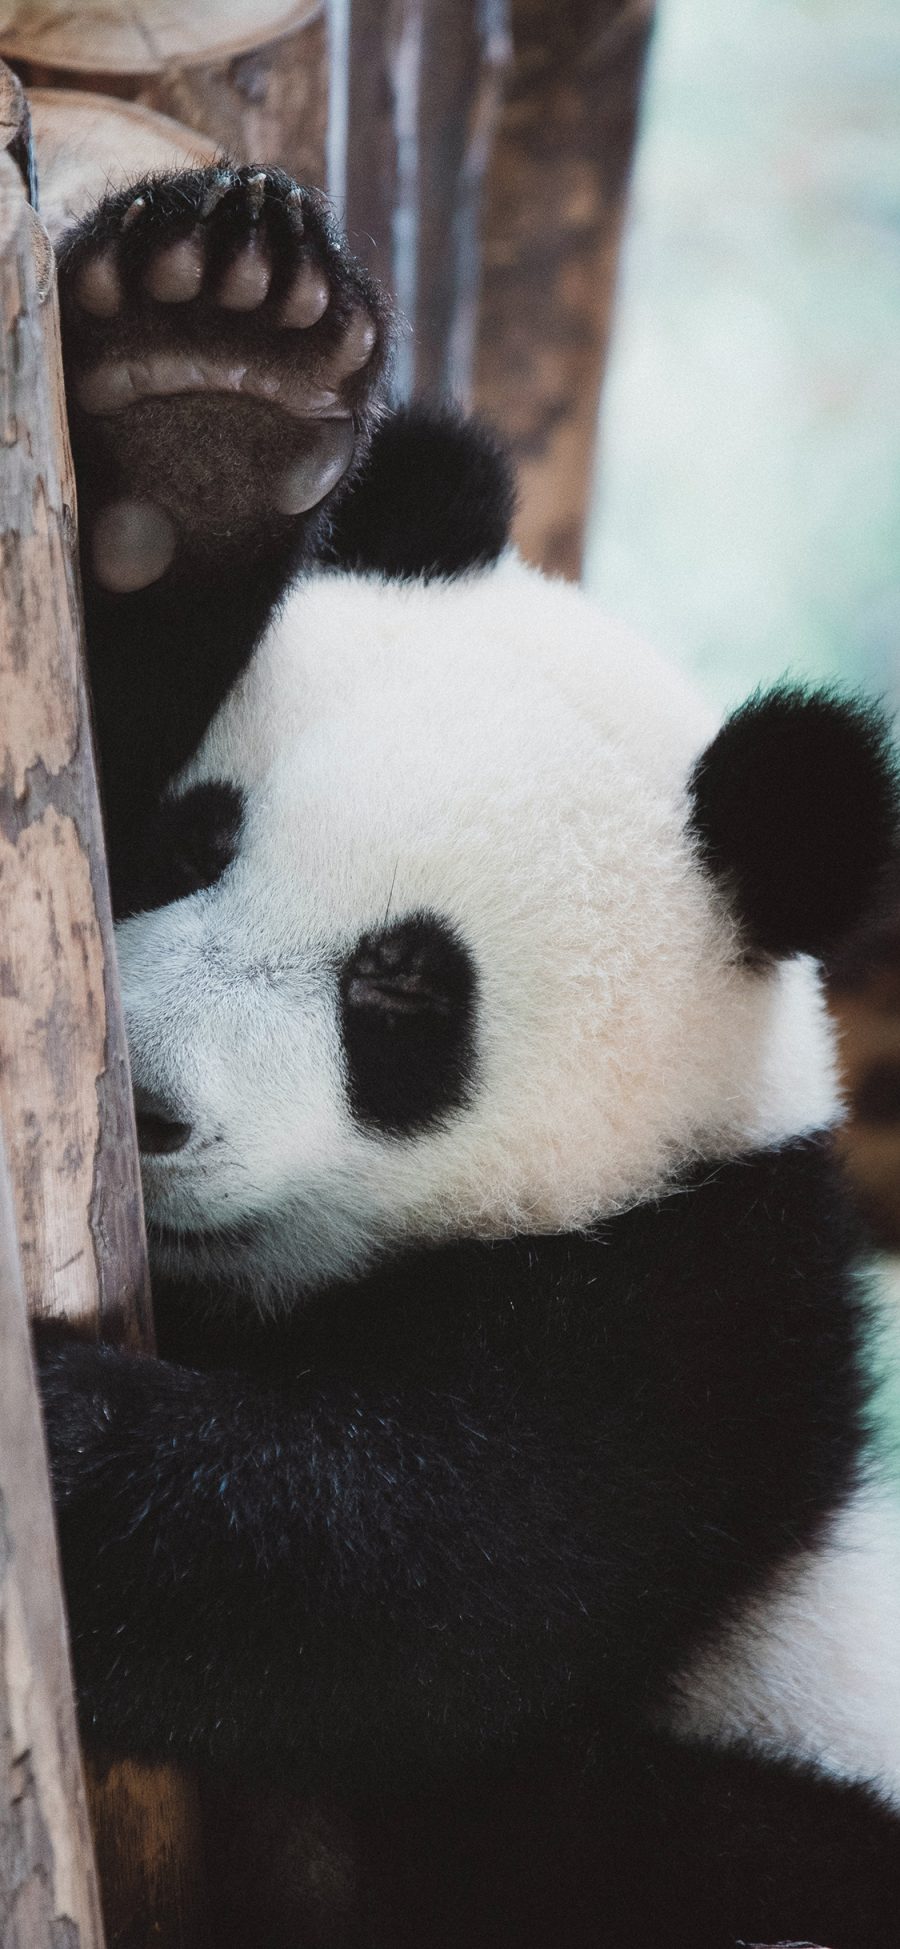 [2436×1125]熊猫 国宝 猛兽 休憩 苹果手机壁纸图片